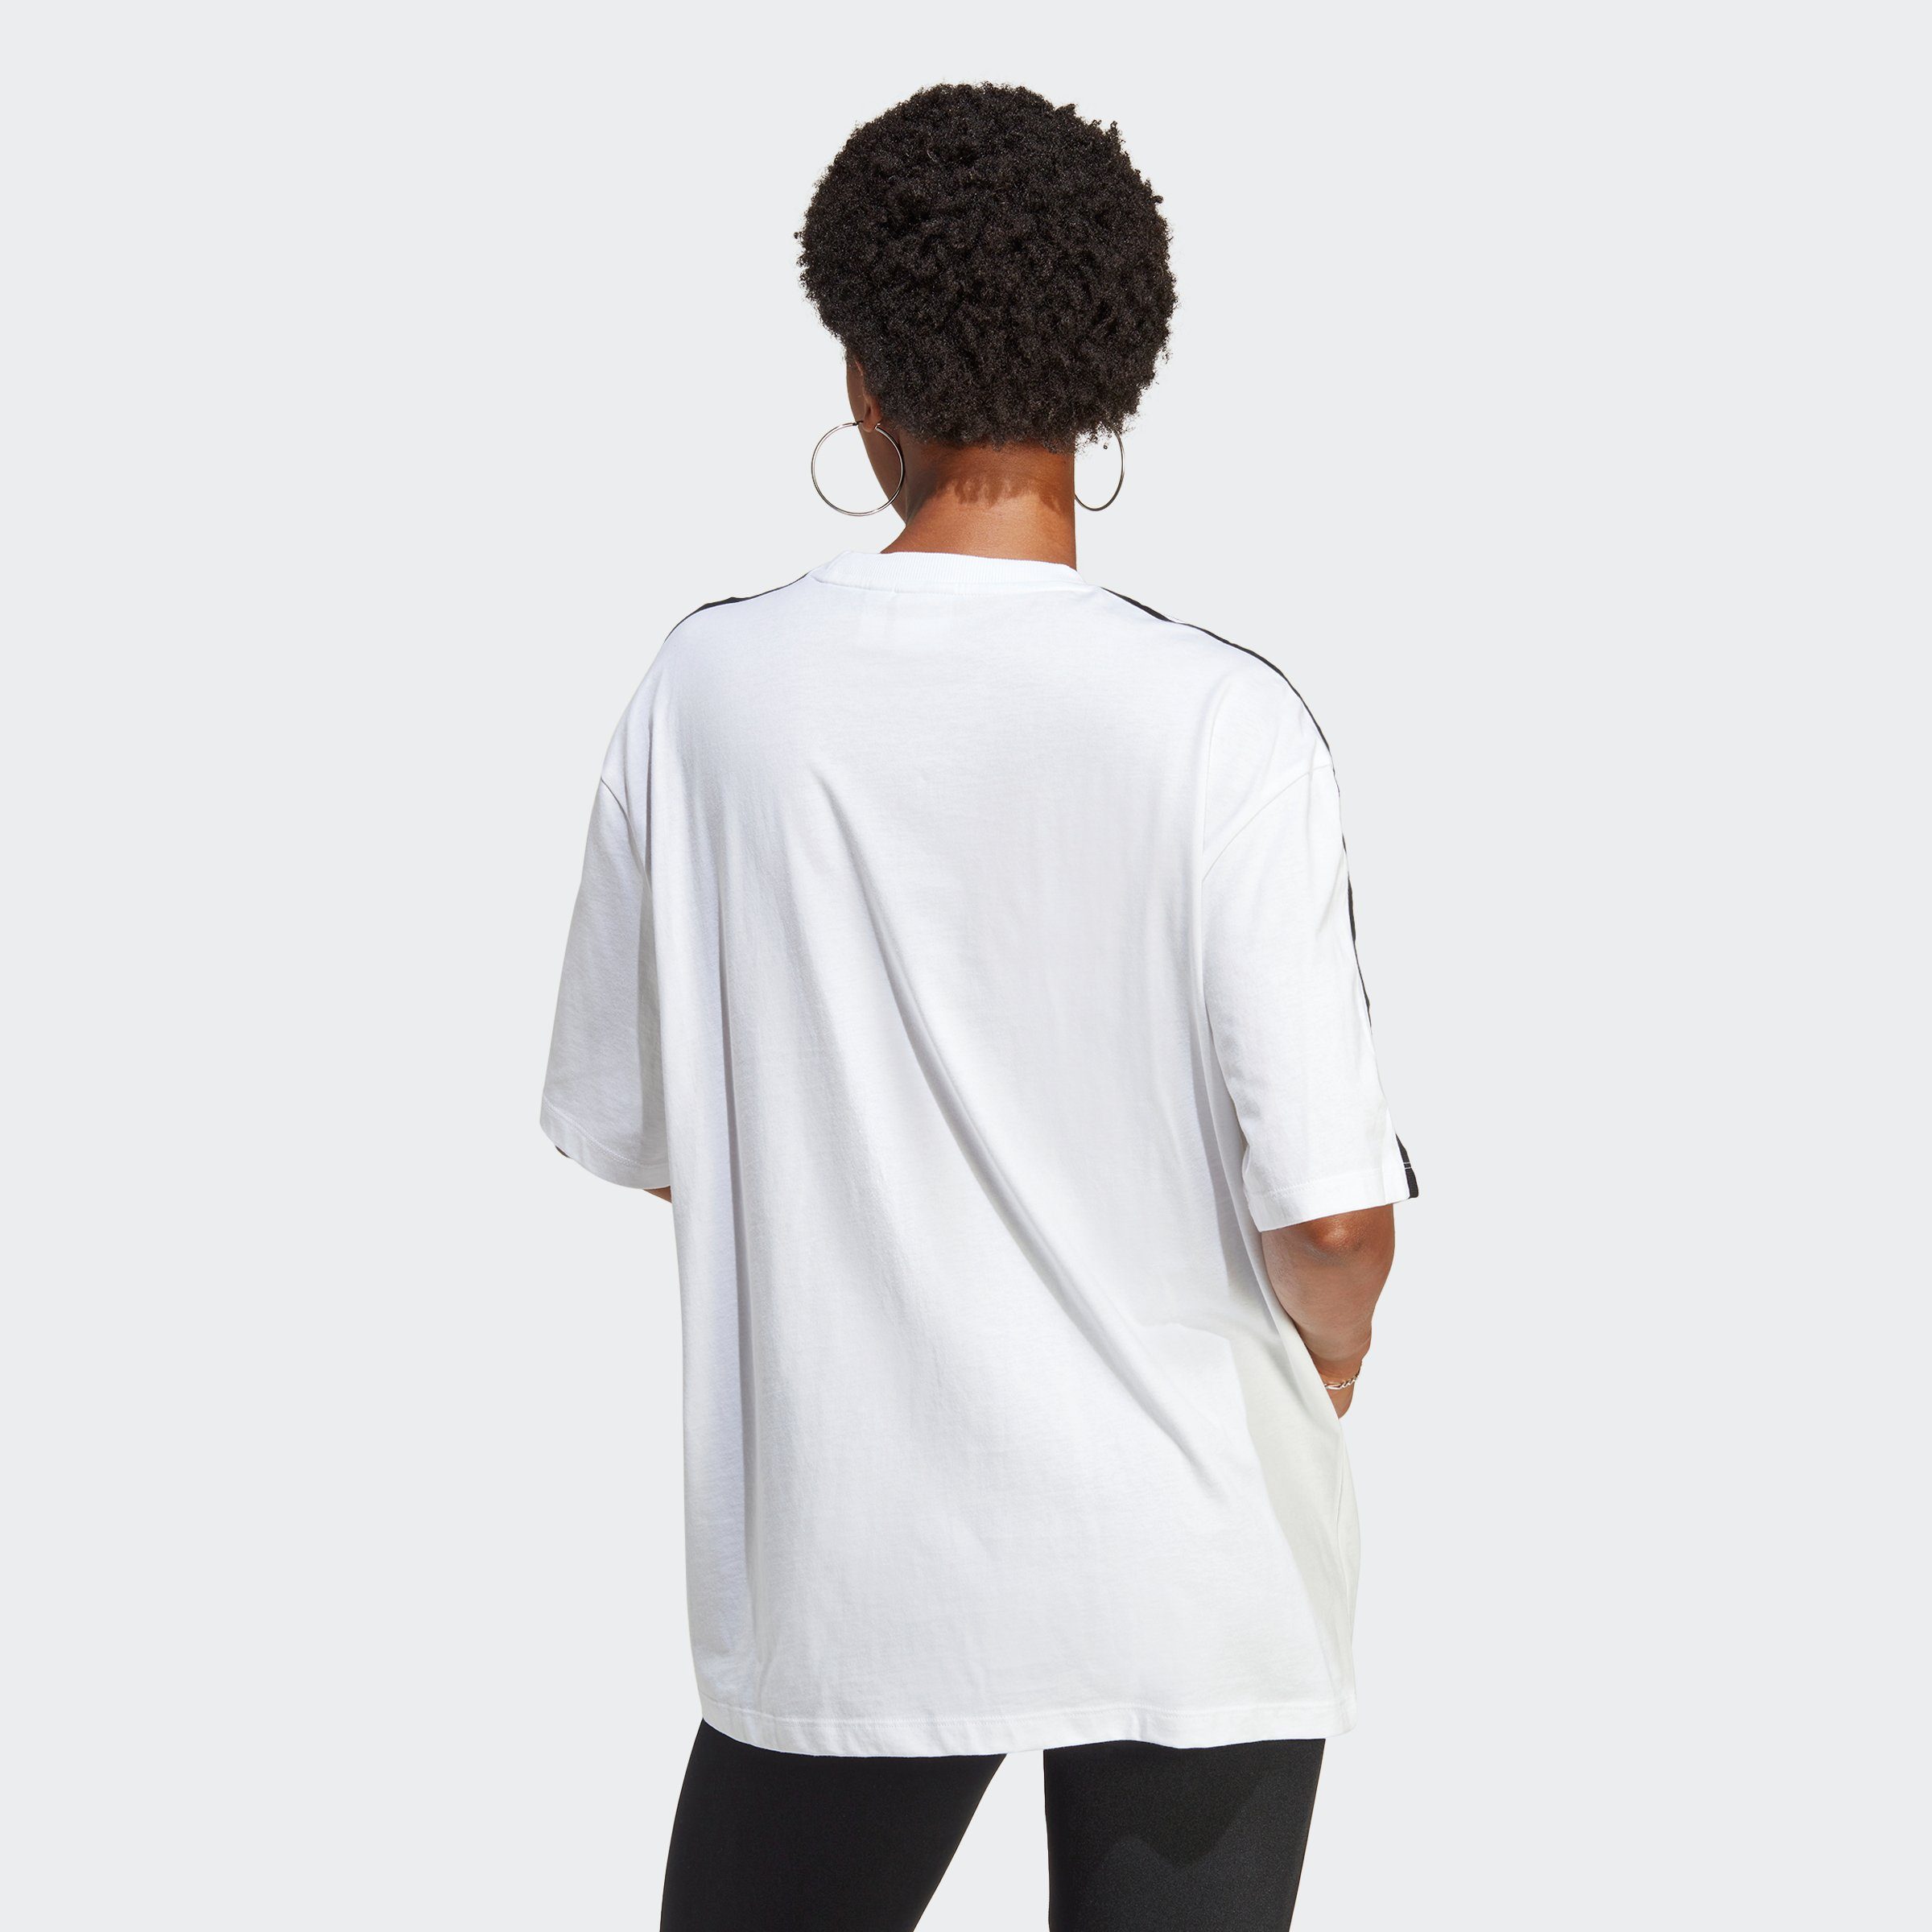 ADICOLOR T-Shirt OVERSIZED CLASSICS White Originals adidas